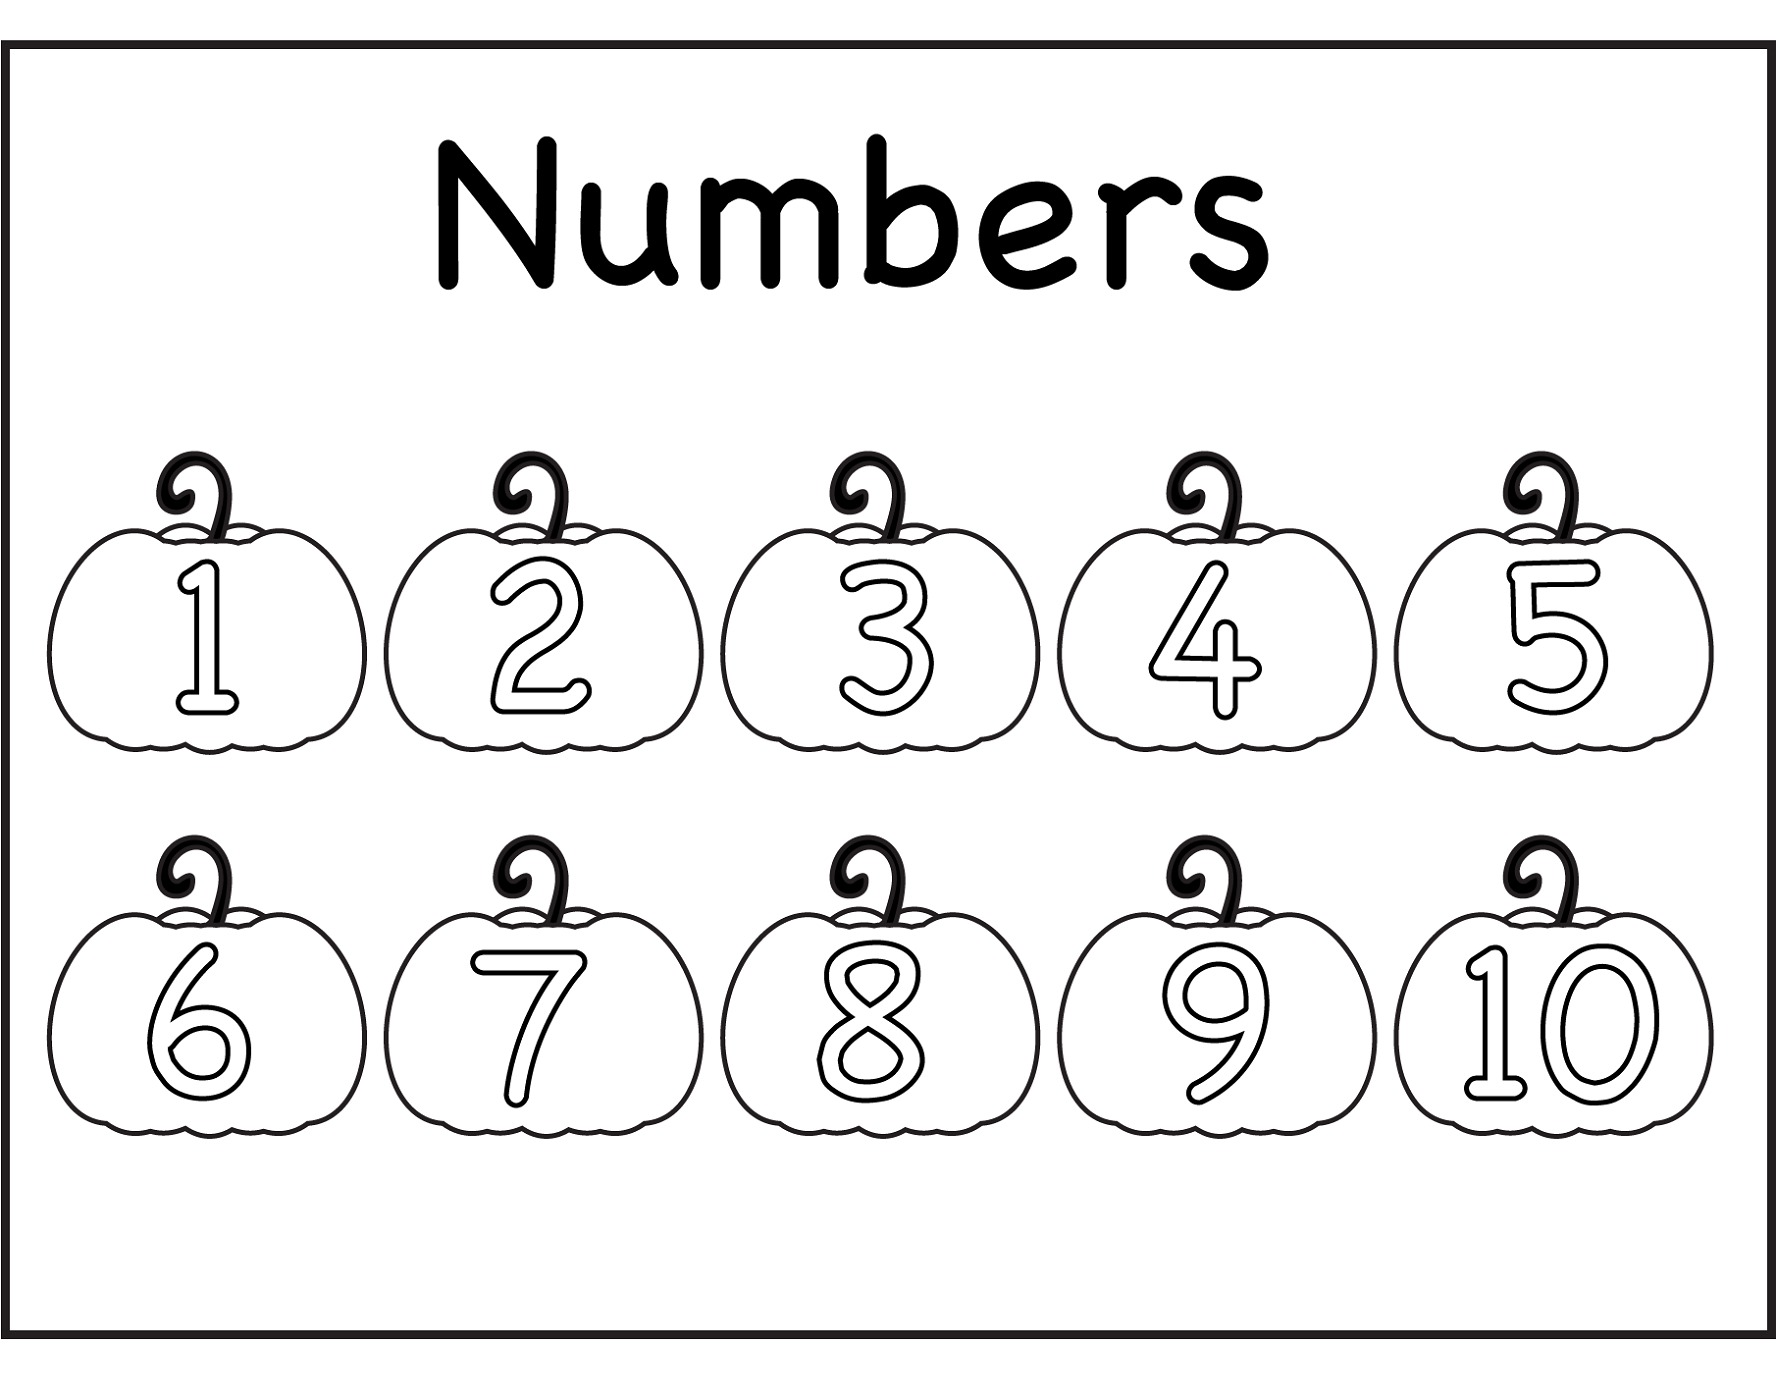 Раскраска цифры. Numbers Worksheets для детей. Цифры на английском для детей раскраска. Www.Worksheetfun.com. 1.10 1